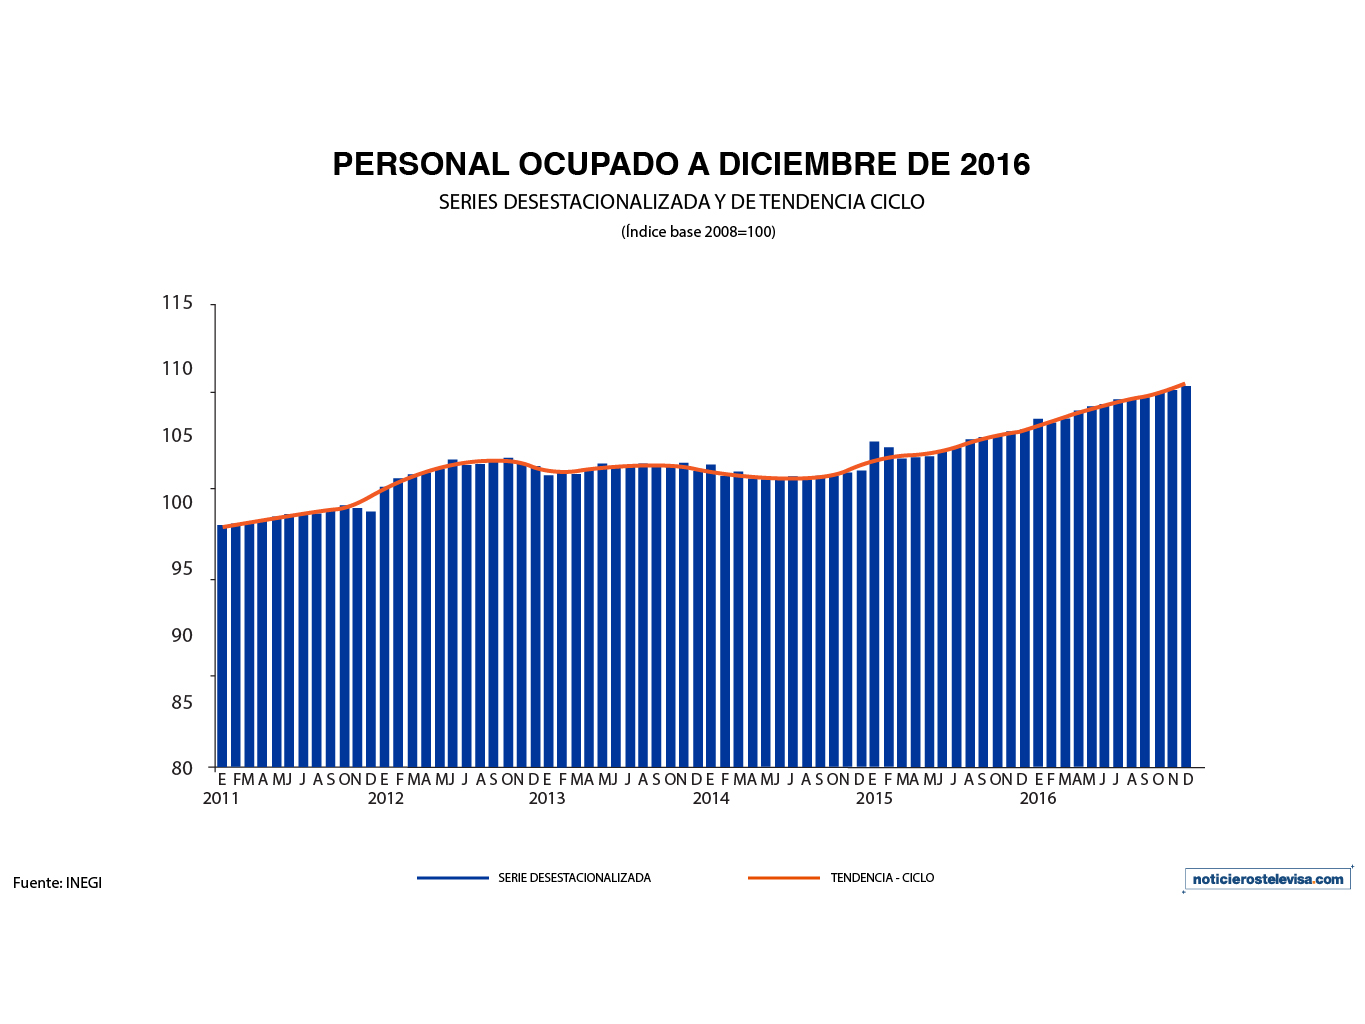 En diciembre, el personal ocupado en el sector servicios aumentó 0.8%